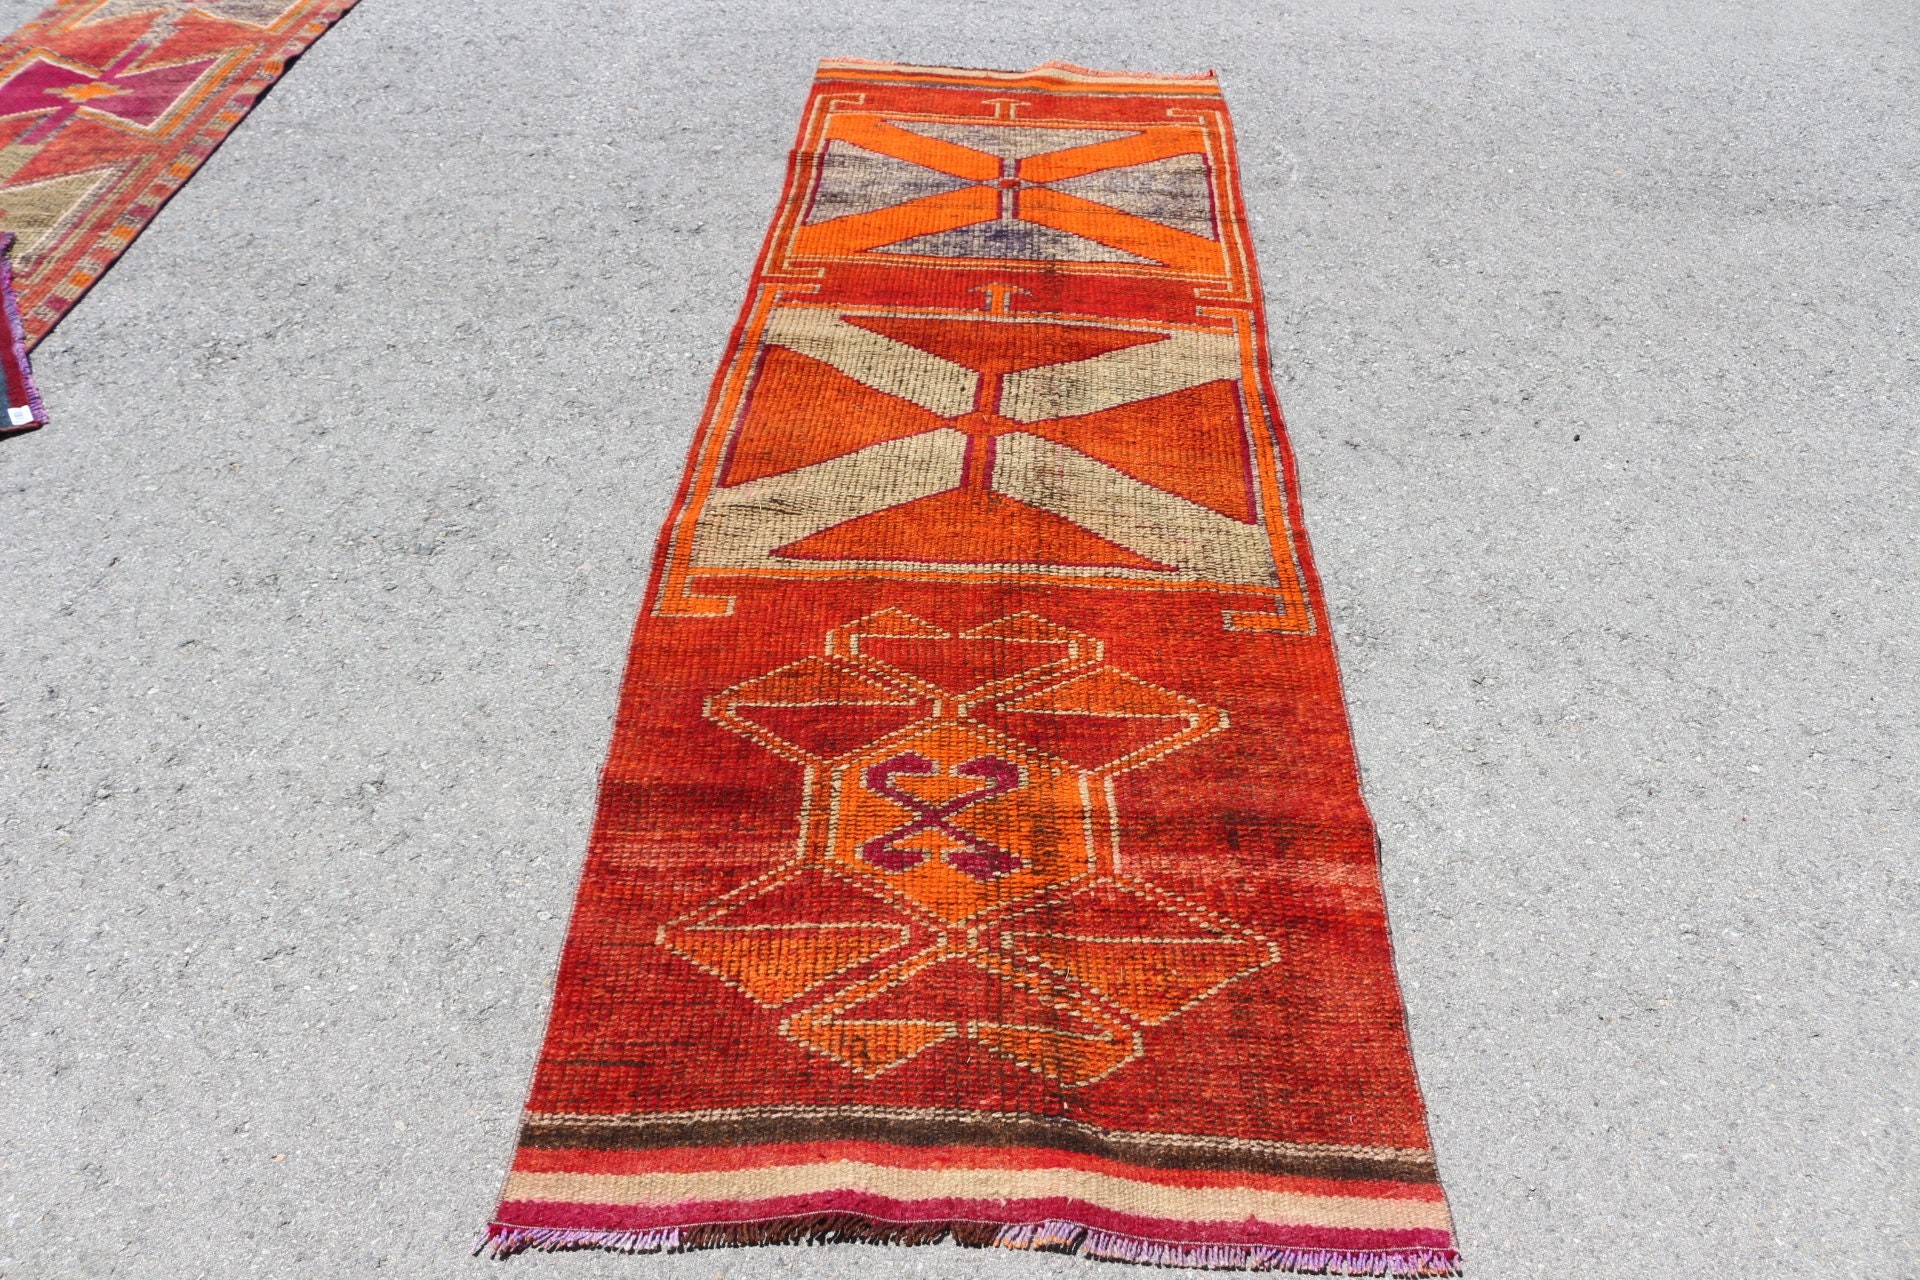 Decorative Rug, Turkish Rug, Hallway Rugs, Vintage Rugs, Red Oushak Rugs, Rugs for Stair, Anatolian Rug, 2.9x9.4 ft Runner Rug, Floor Rugs